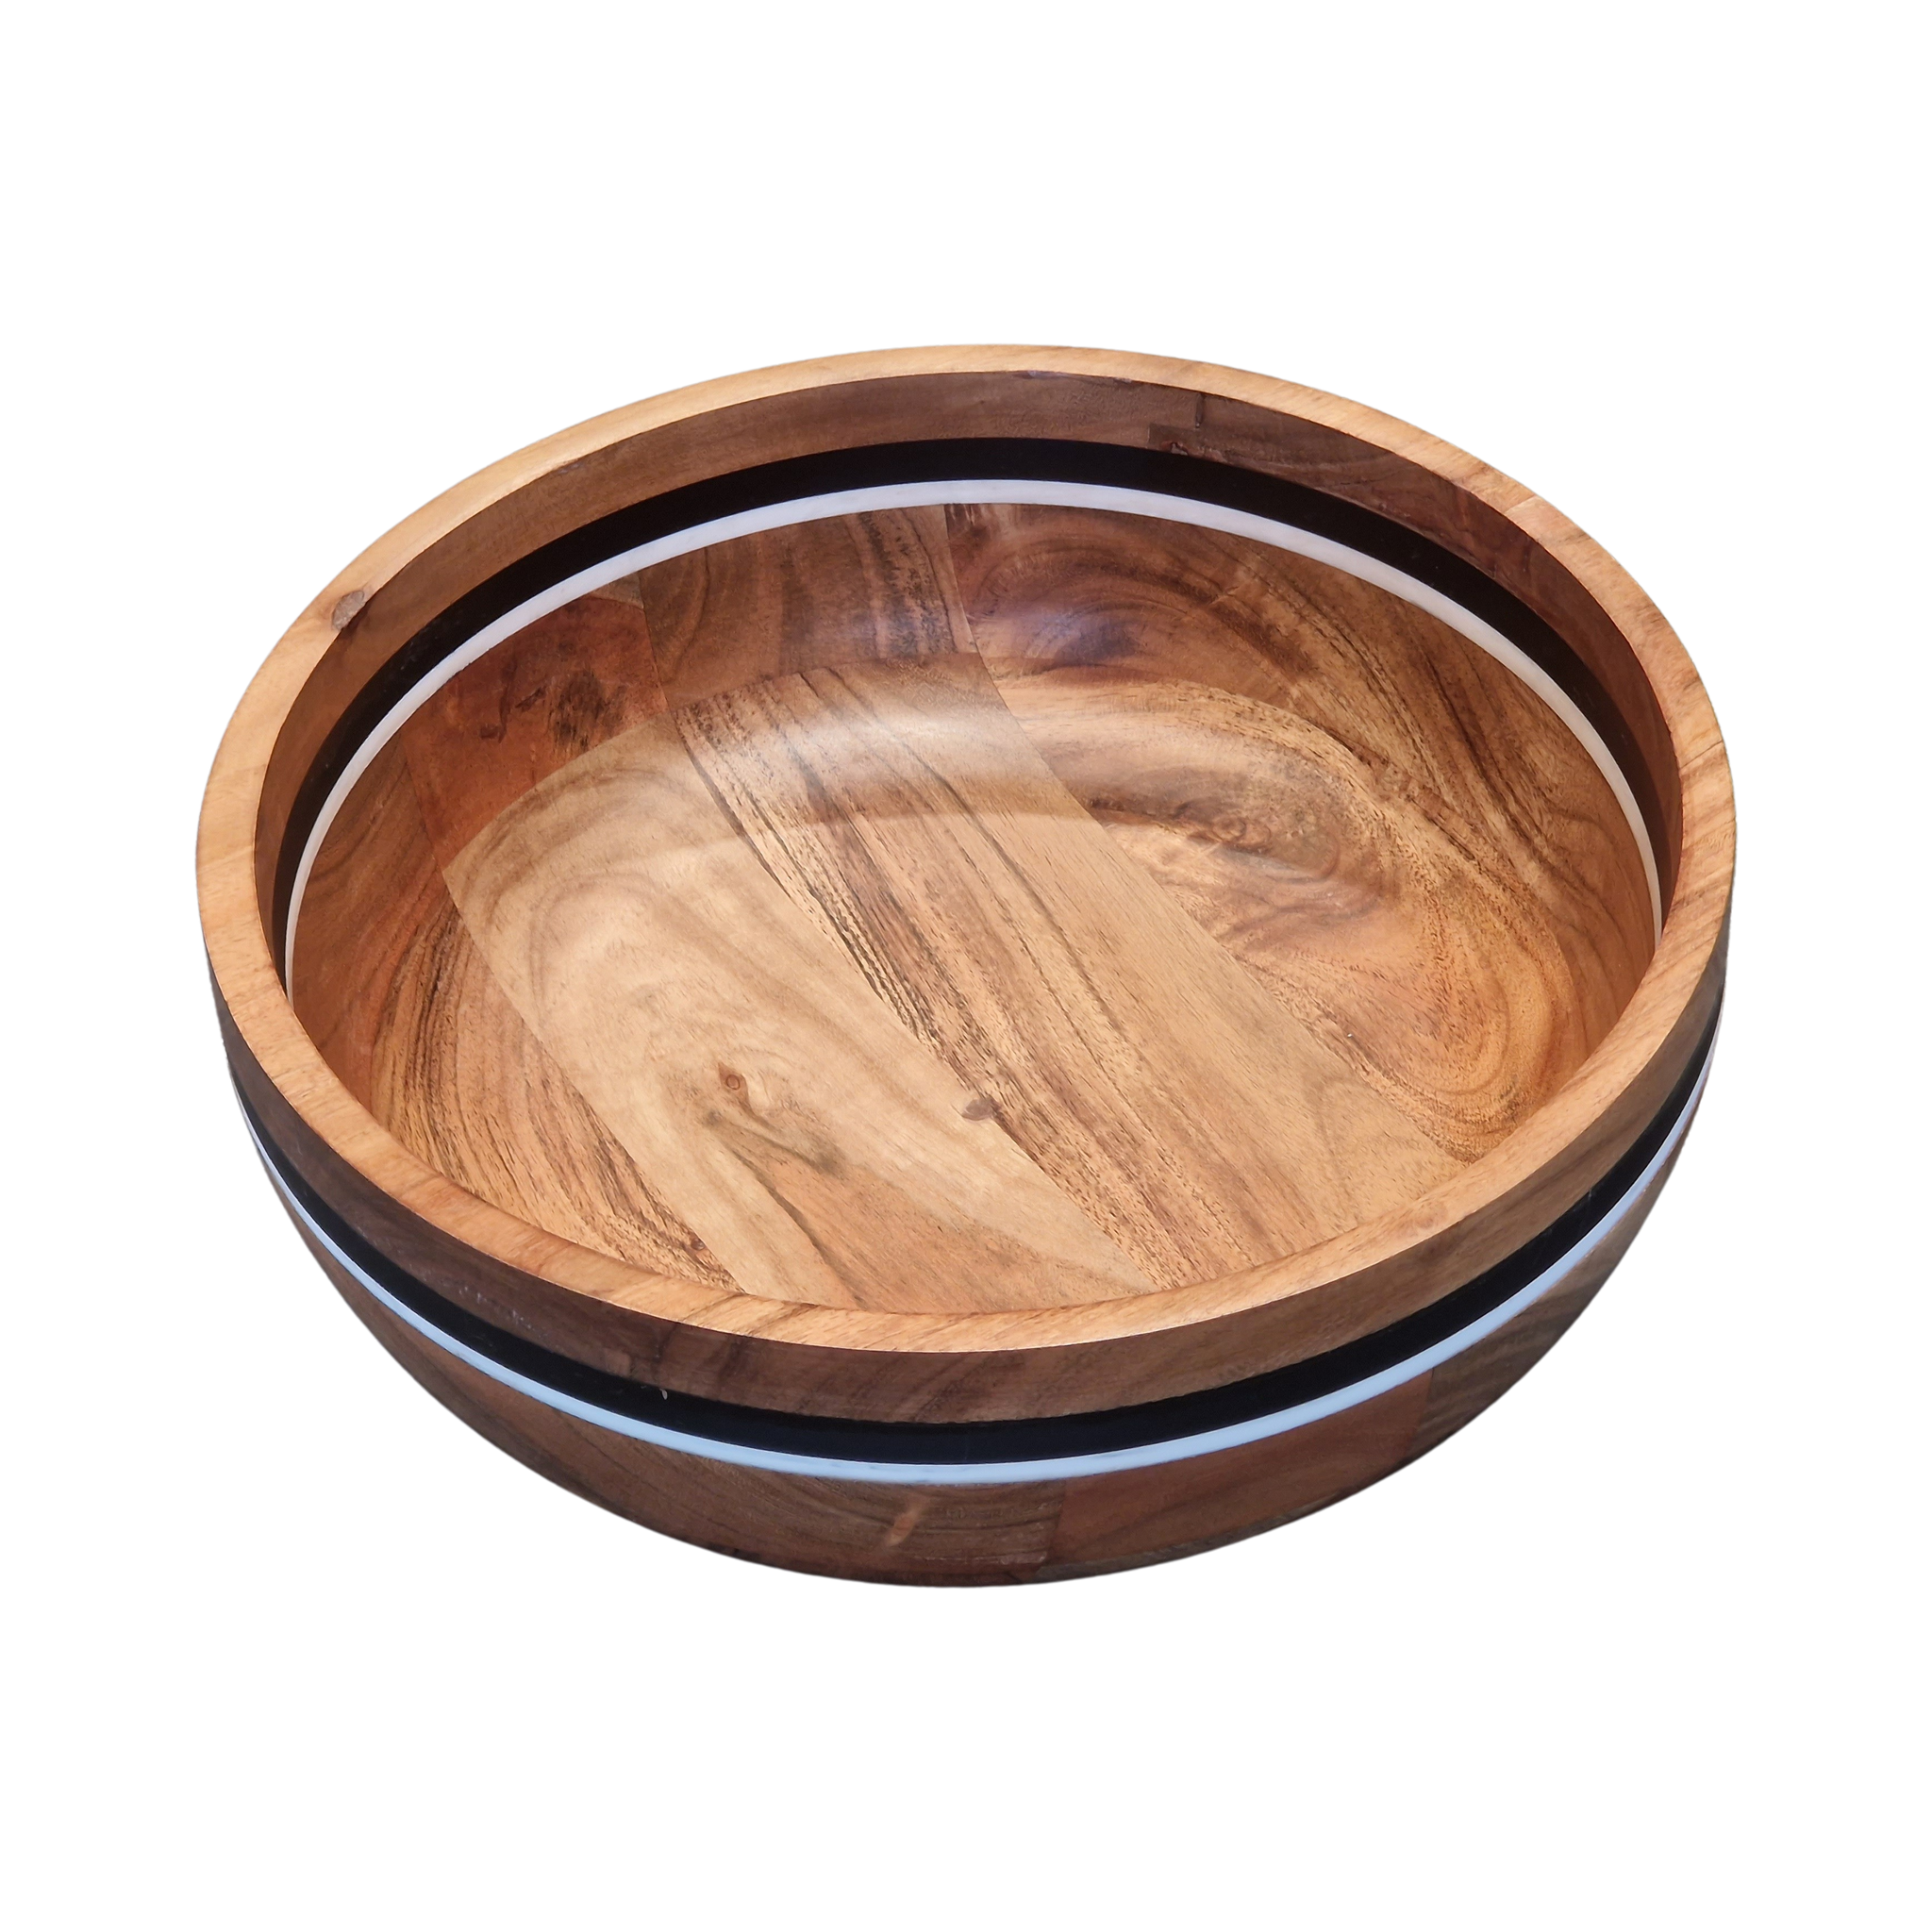 89473 DIEST Decorative bowl Diam.33cm